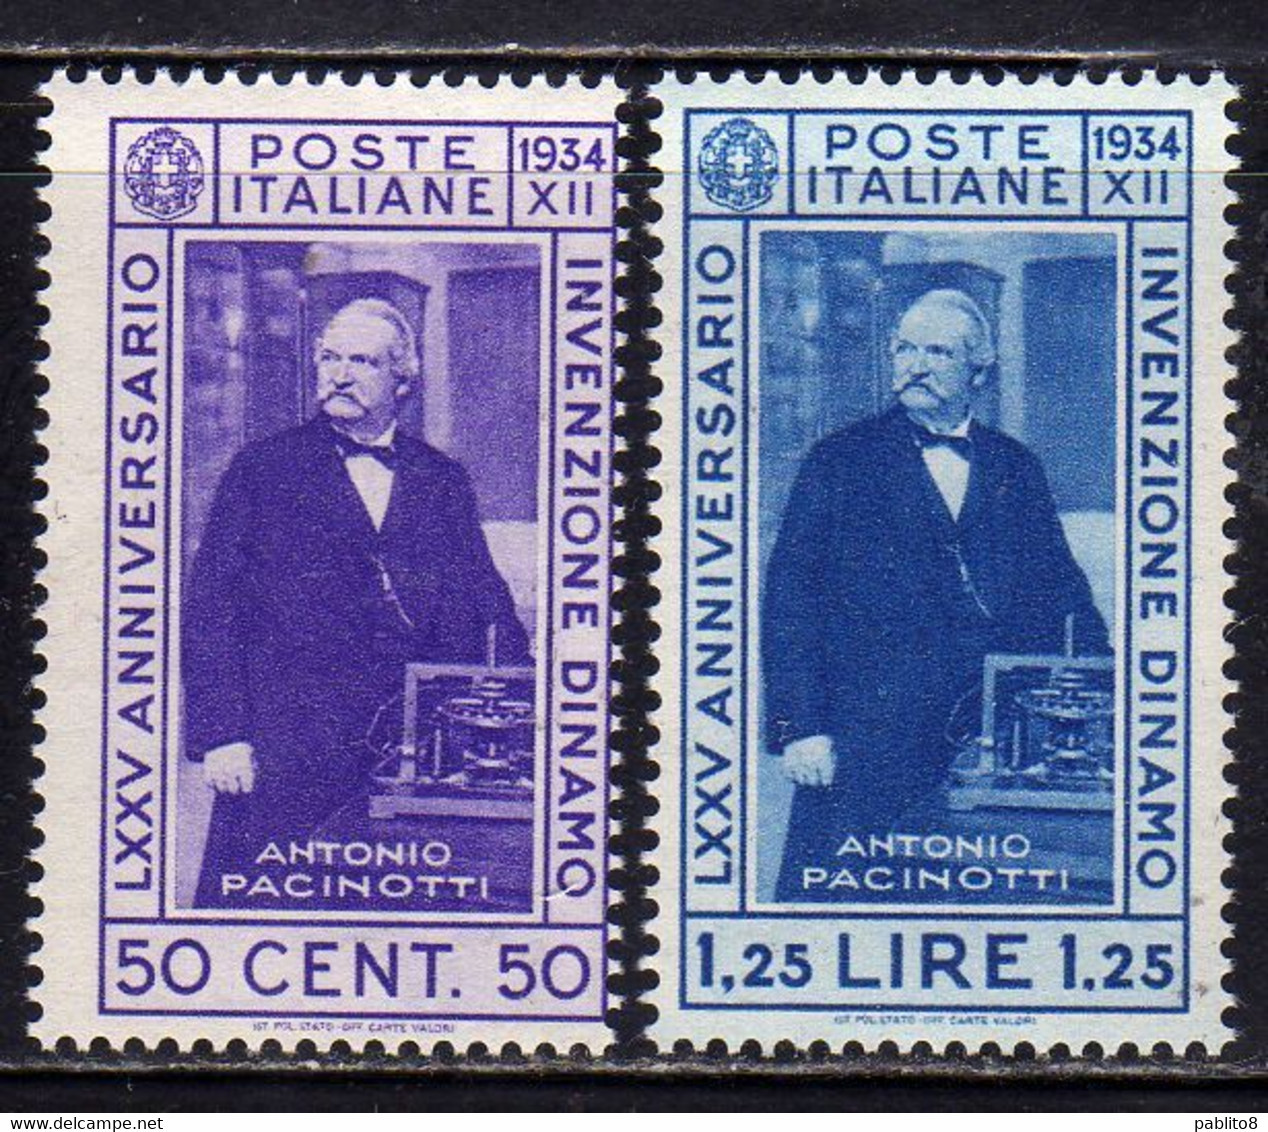 ITALIA REGNO ITALY KINGDOM 1934 INVENZIONE DELLA DINAMO PACINOTTI SERIE COMPLETA COMPLETE SET MNH - Ongebruikt